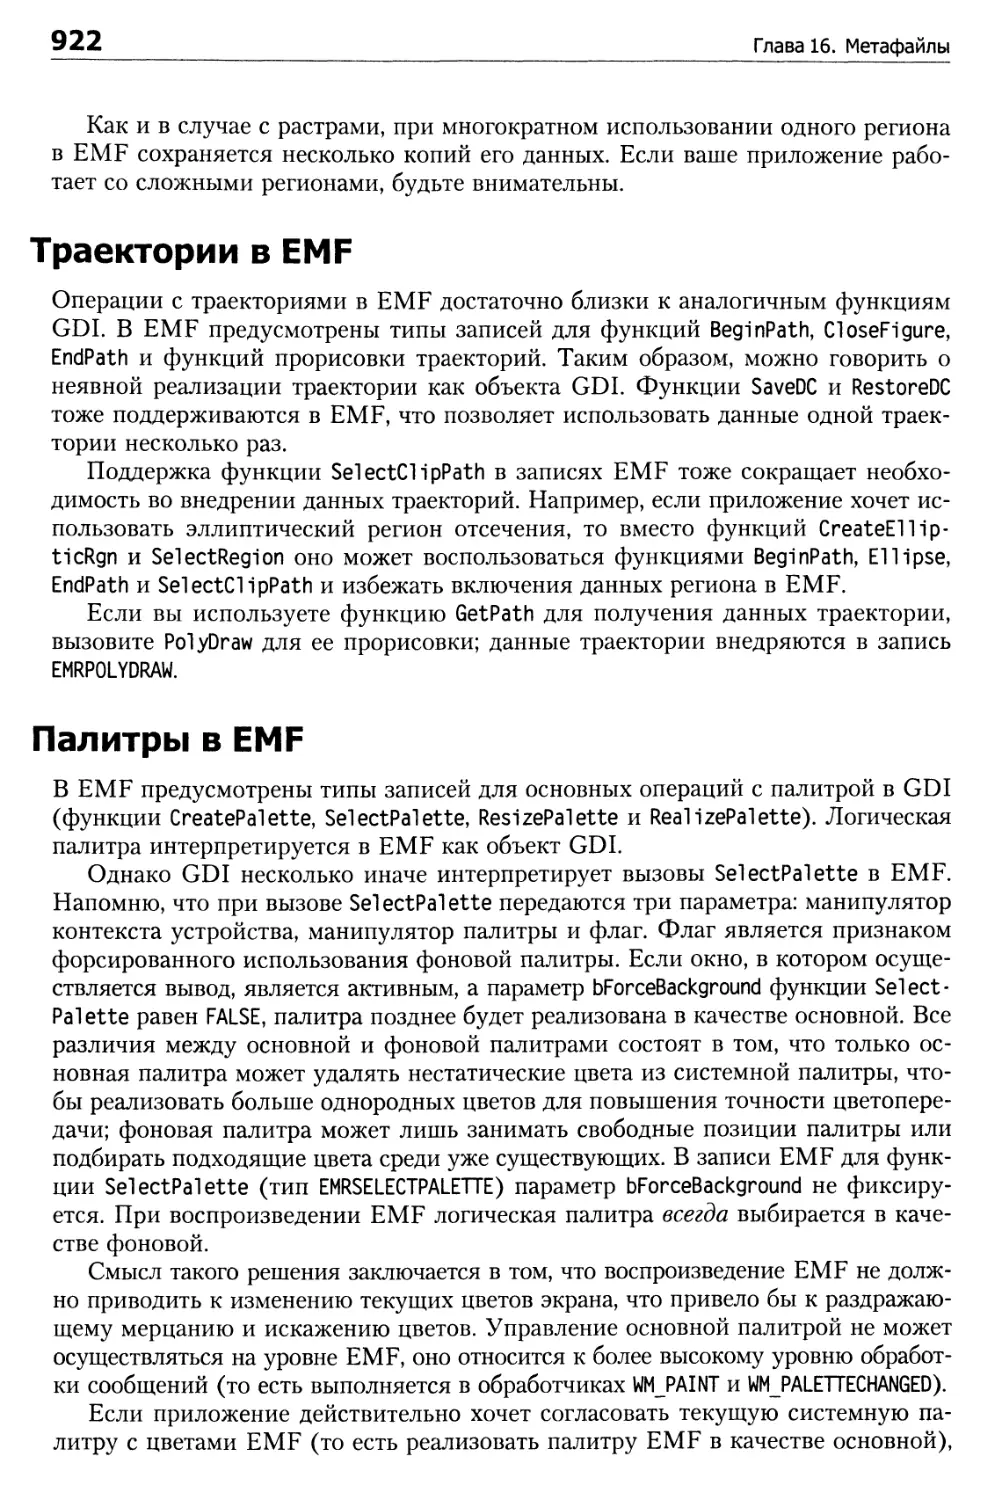 Траектории в EMF
Палитры в EMF